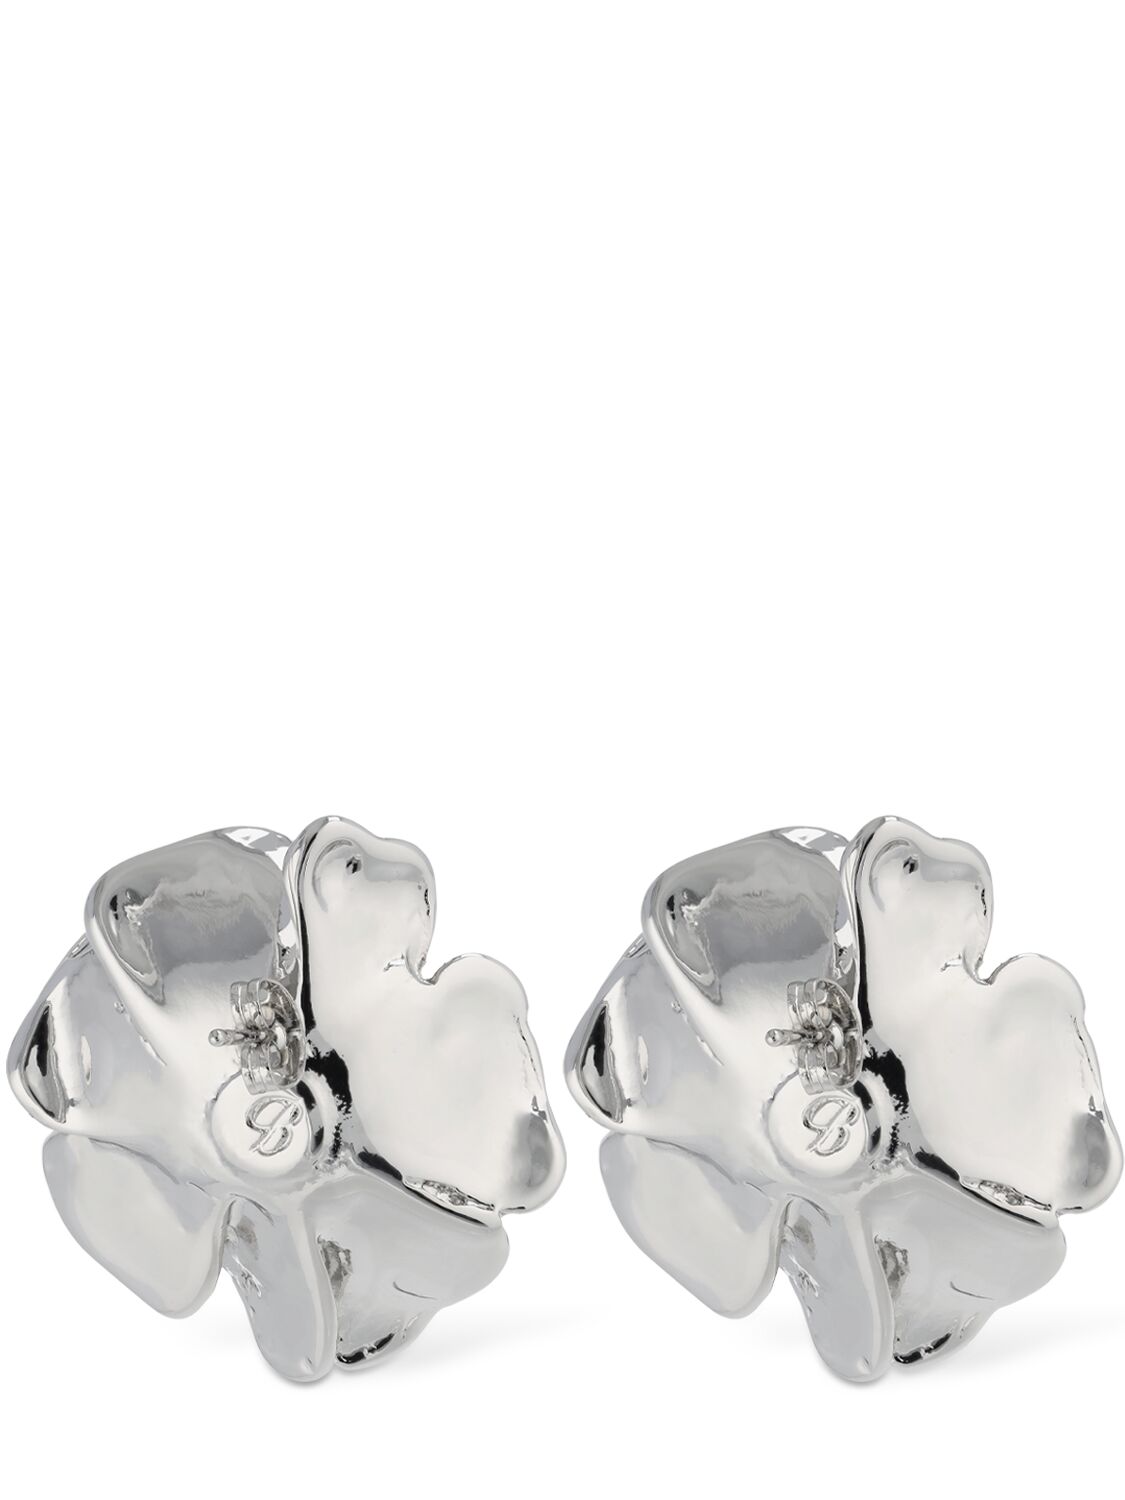 Shop Blumarine Rose Stud Earrings In Silver